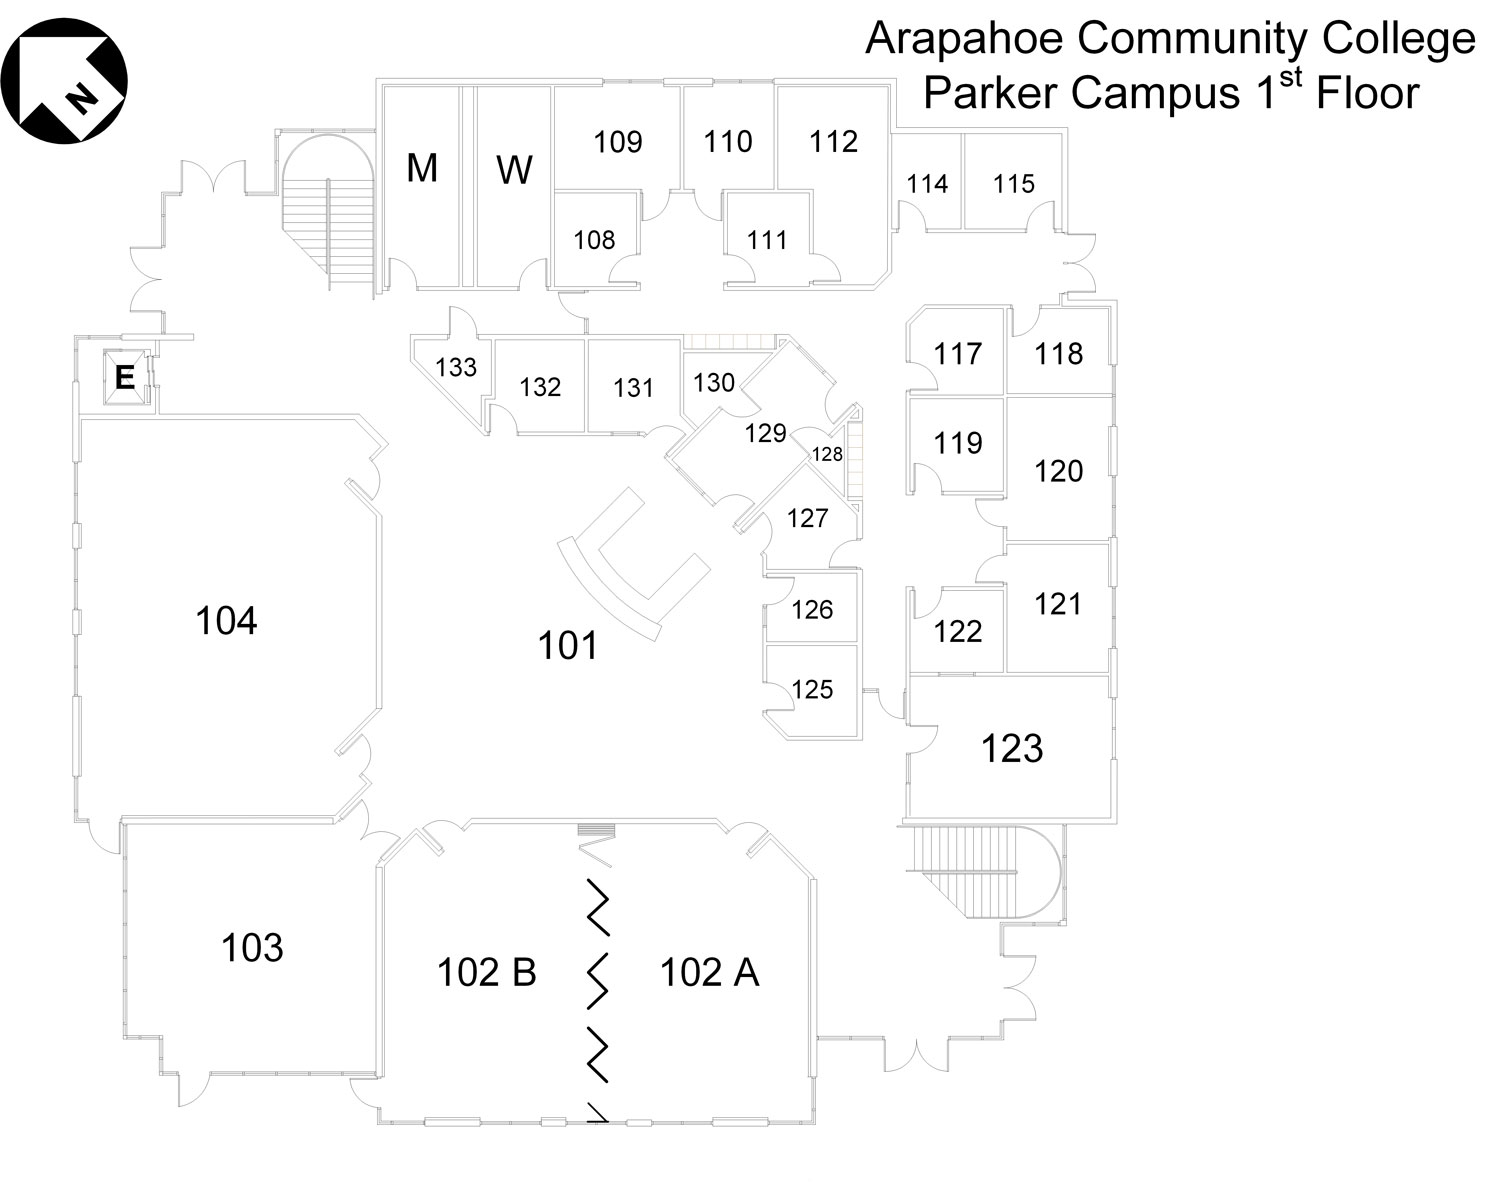 arapahoe community college campus map Campus Maps Arapahoe Community College arapahoe community college campus map